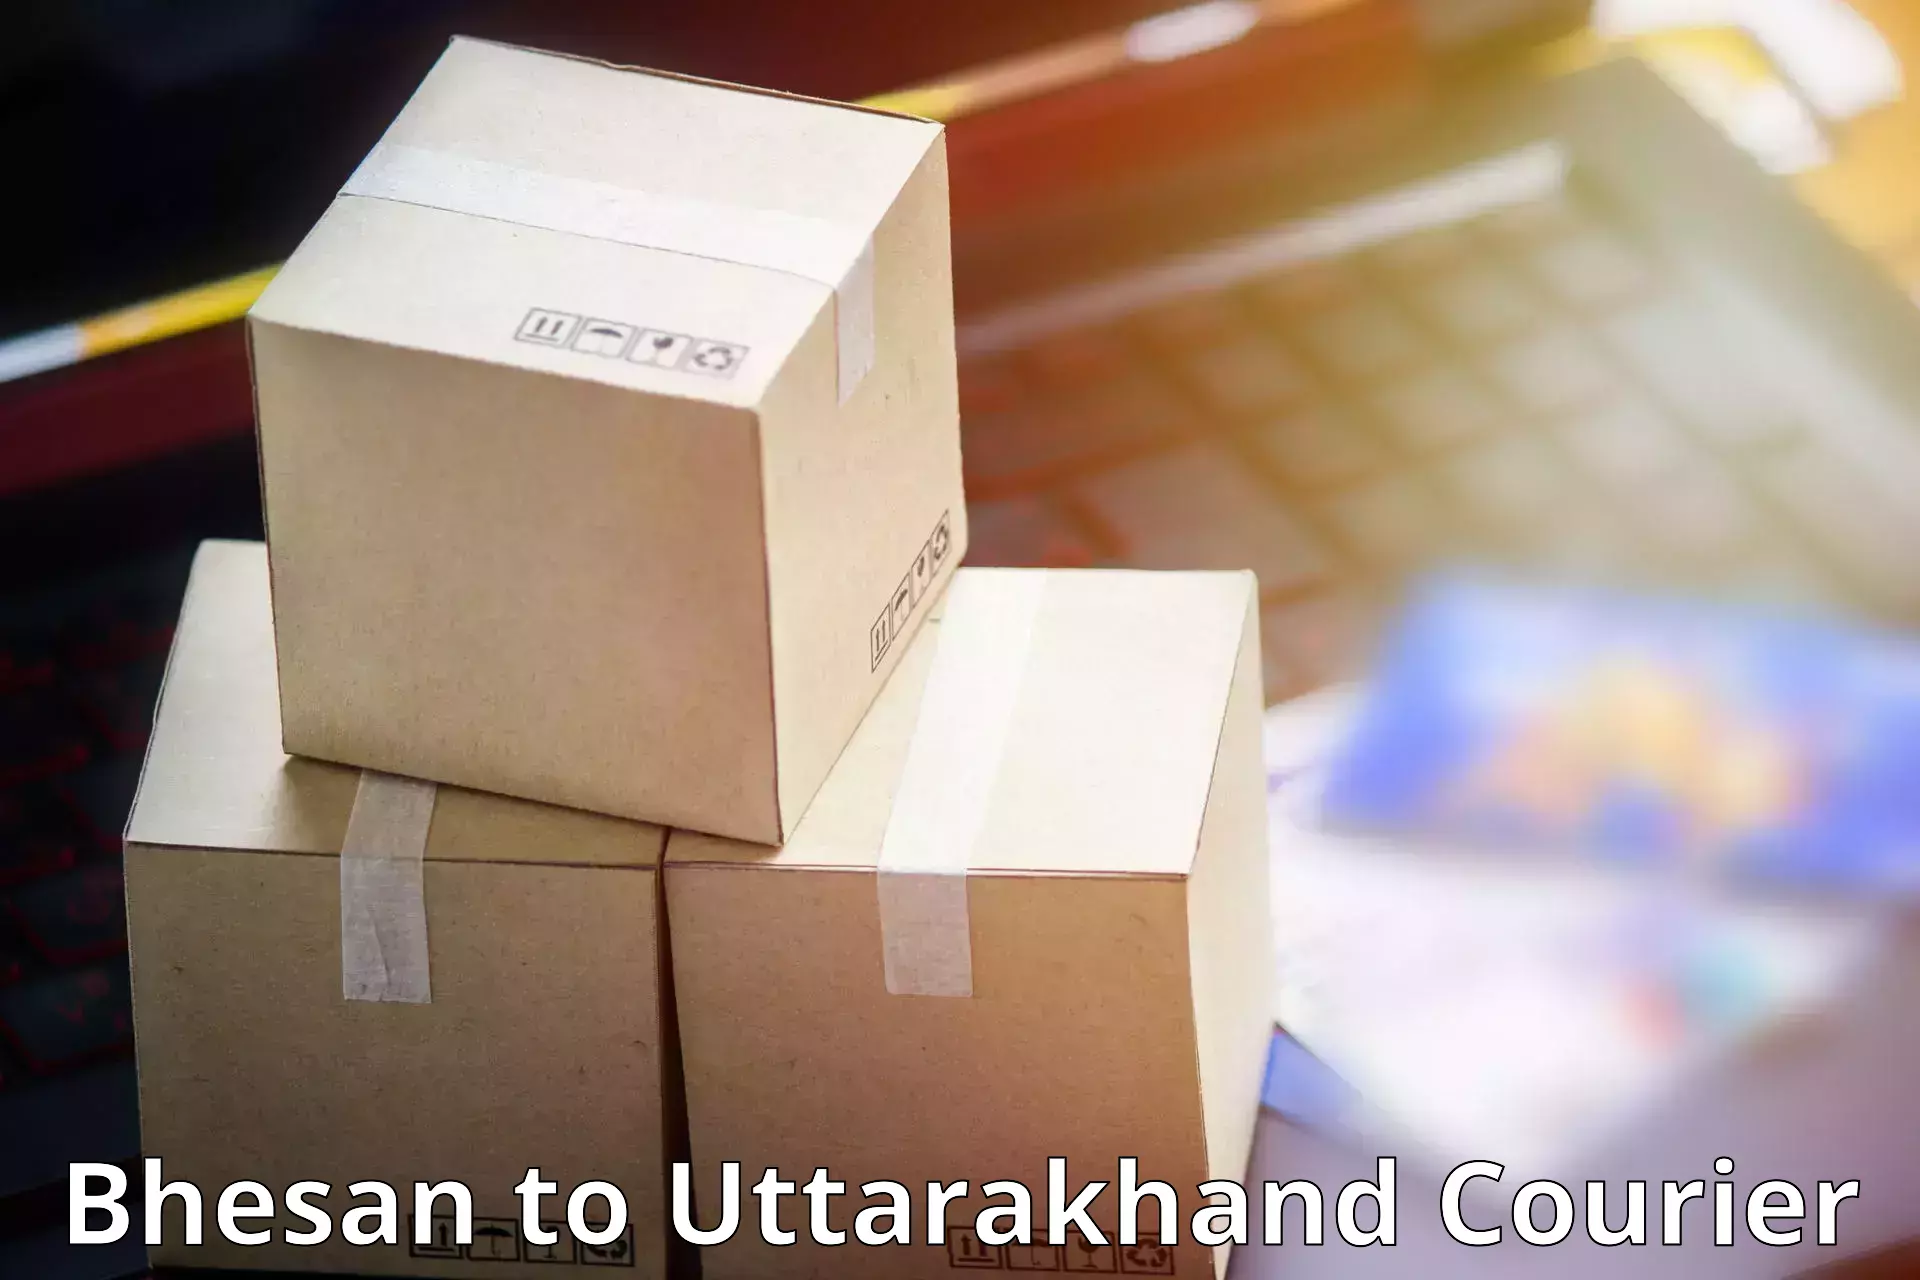 Affordable parcel service Bhesan to Nainital